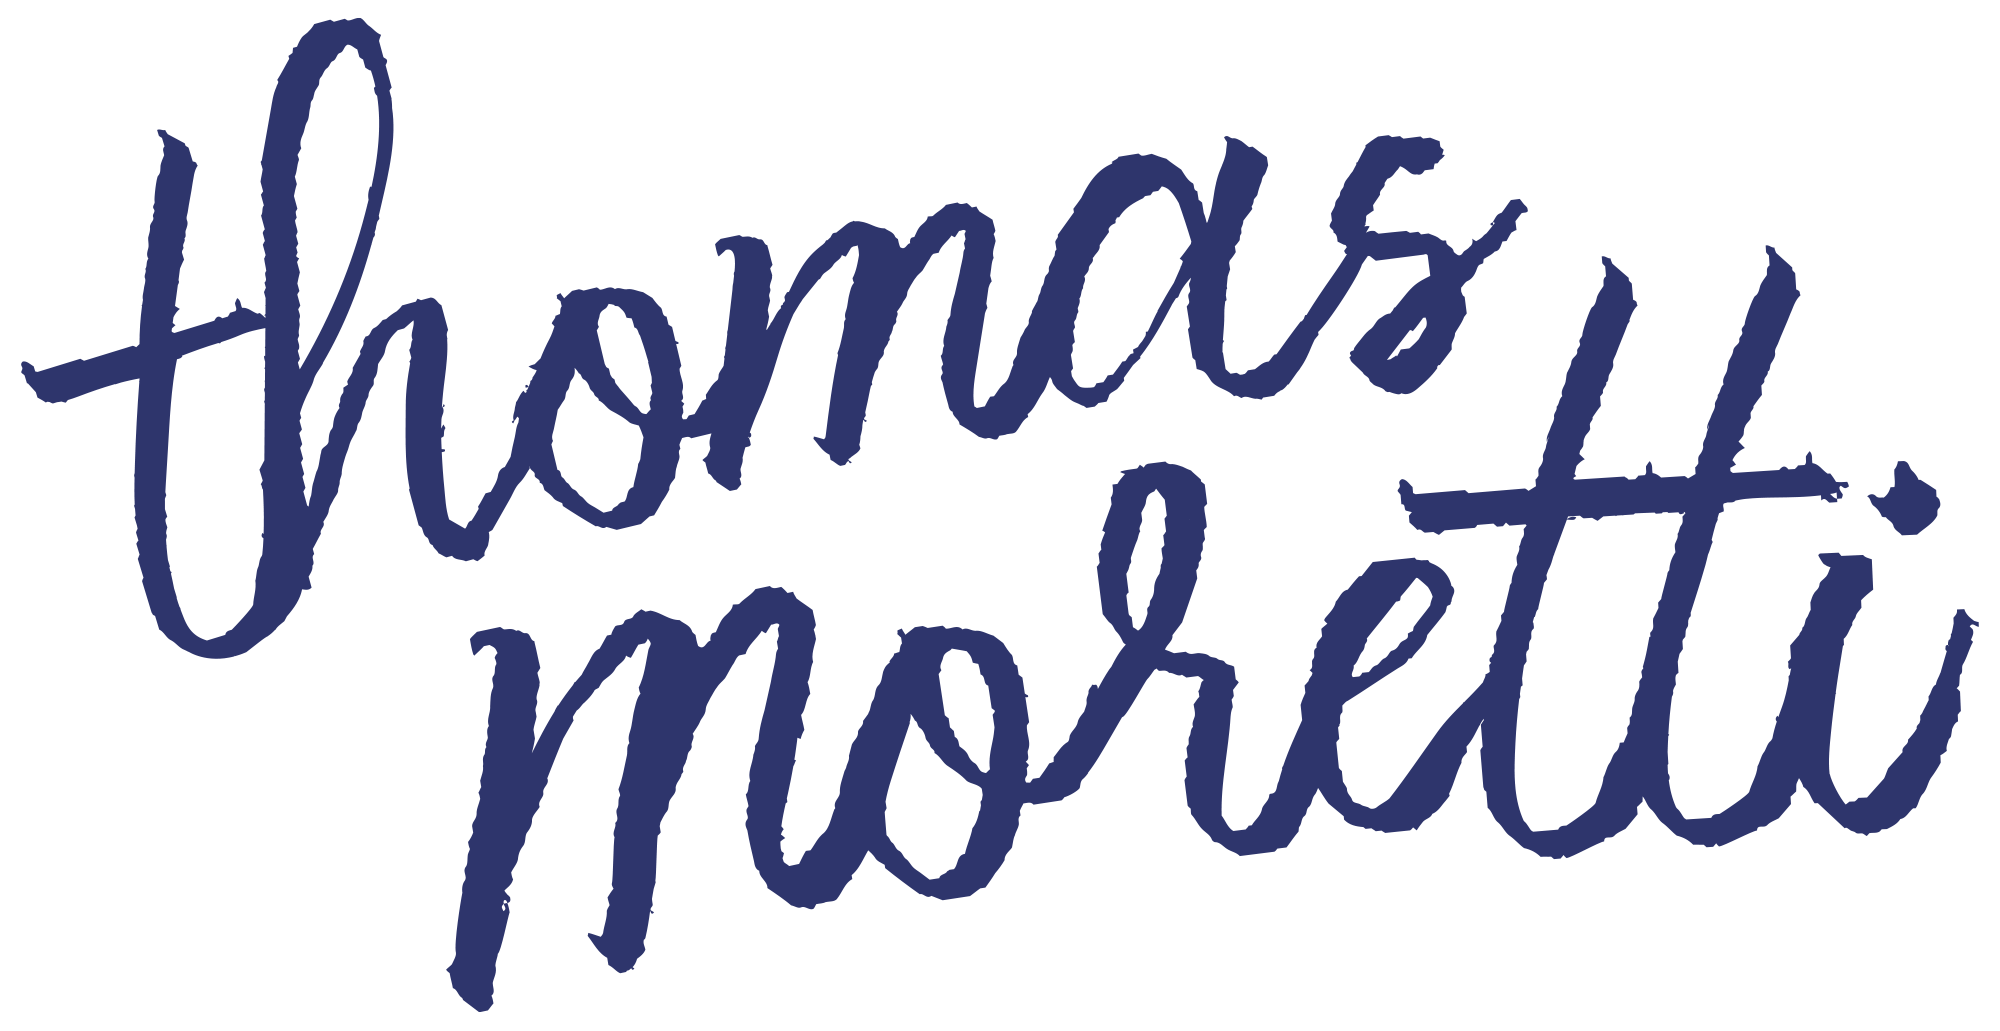 Thomas Moretti